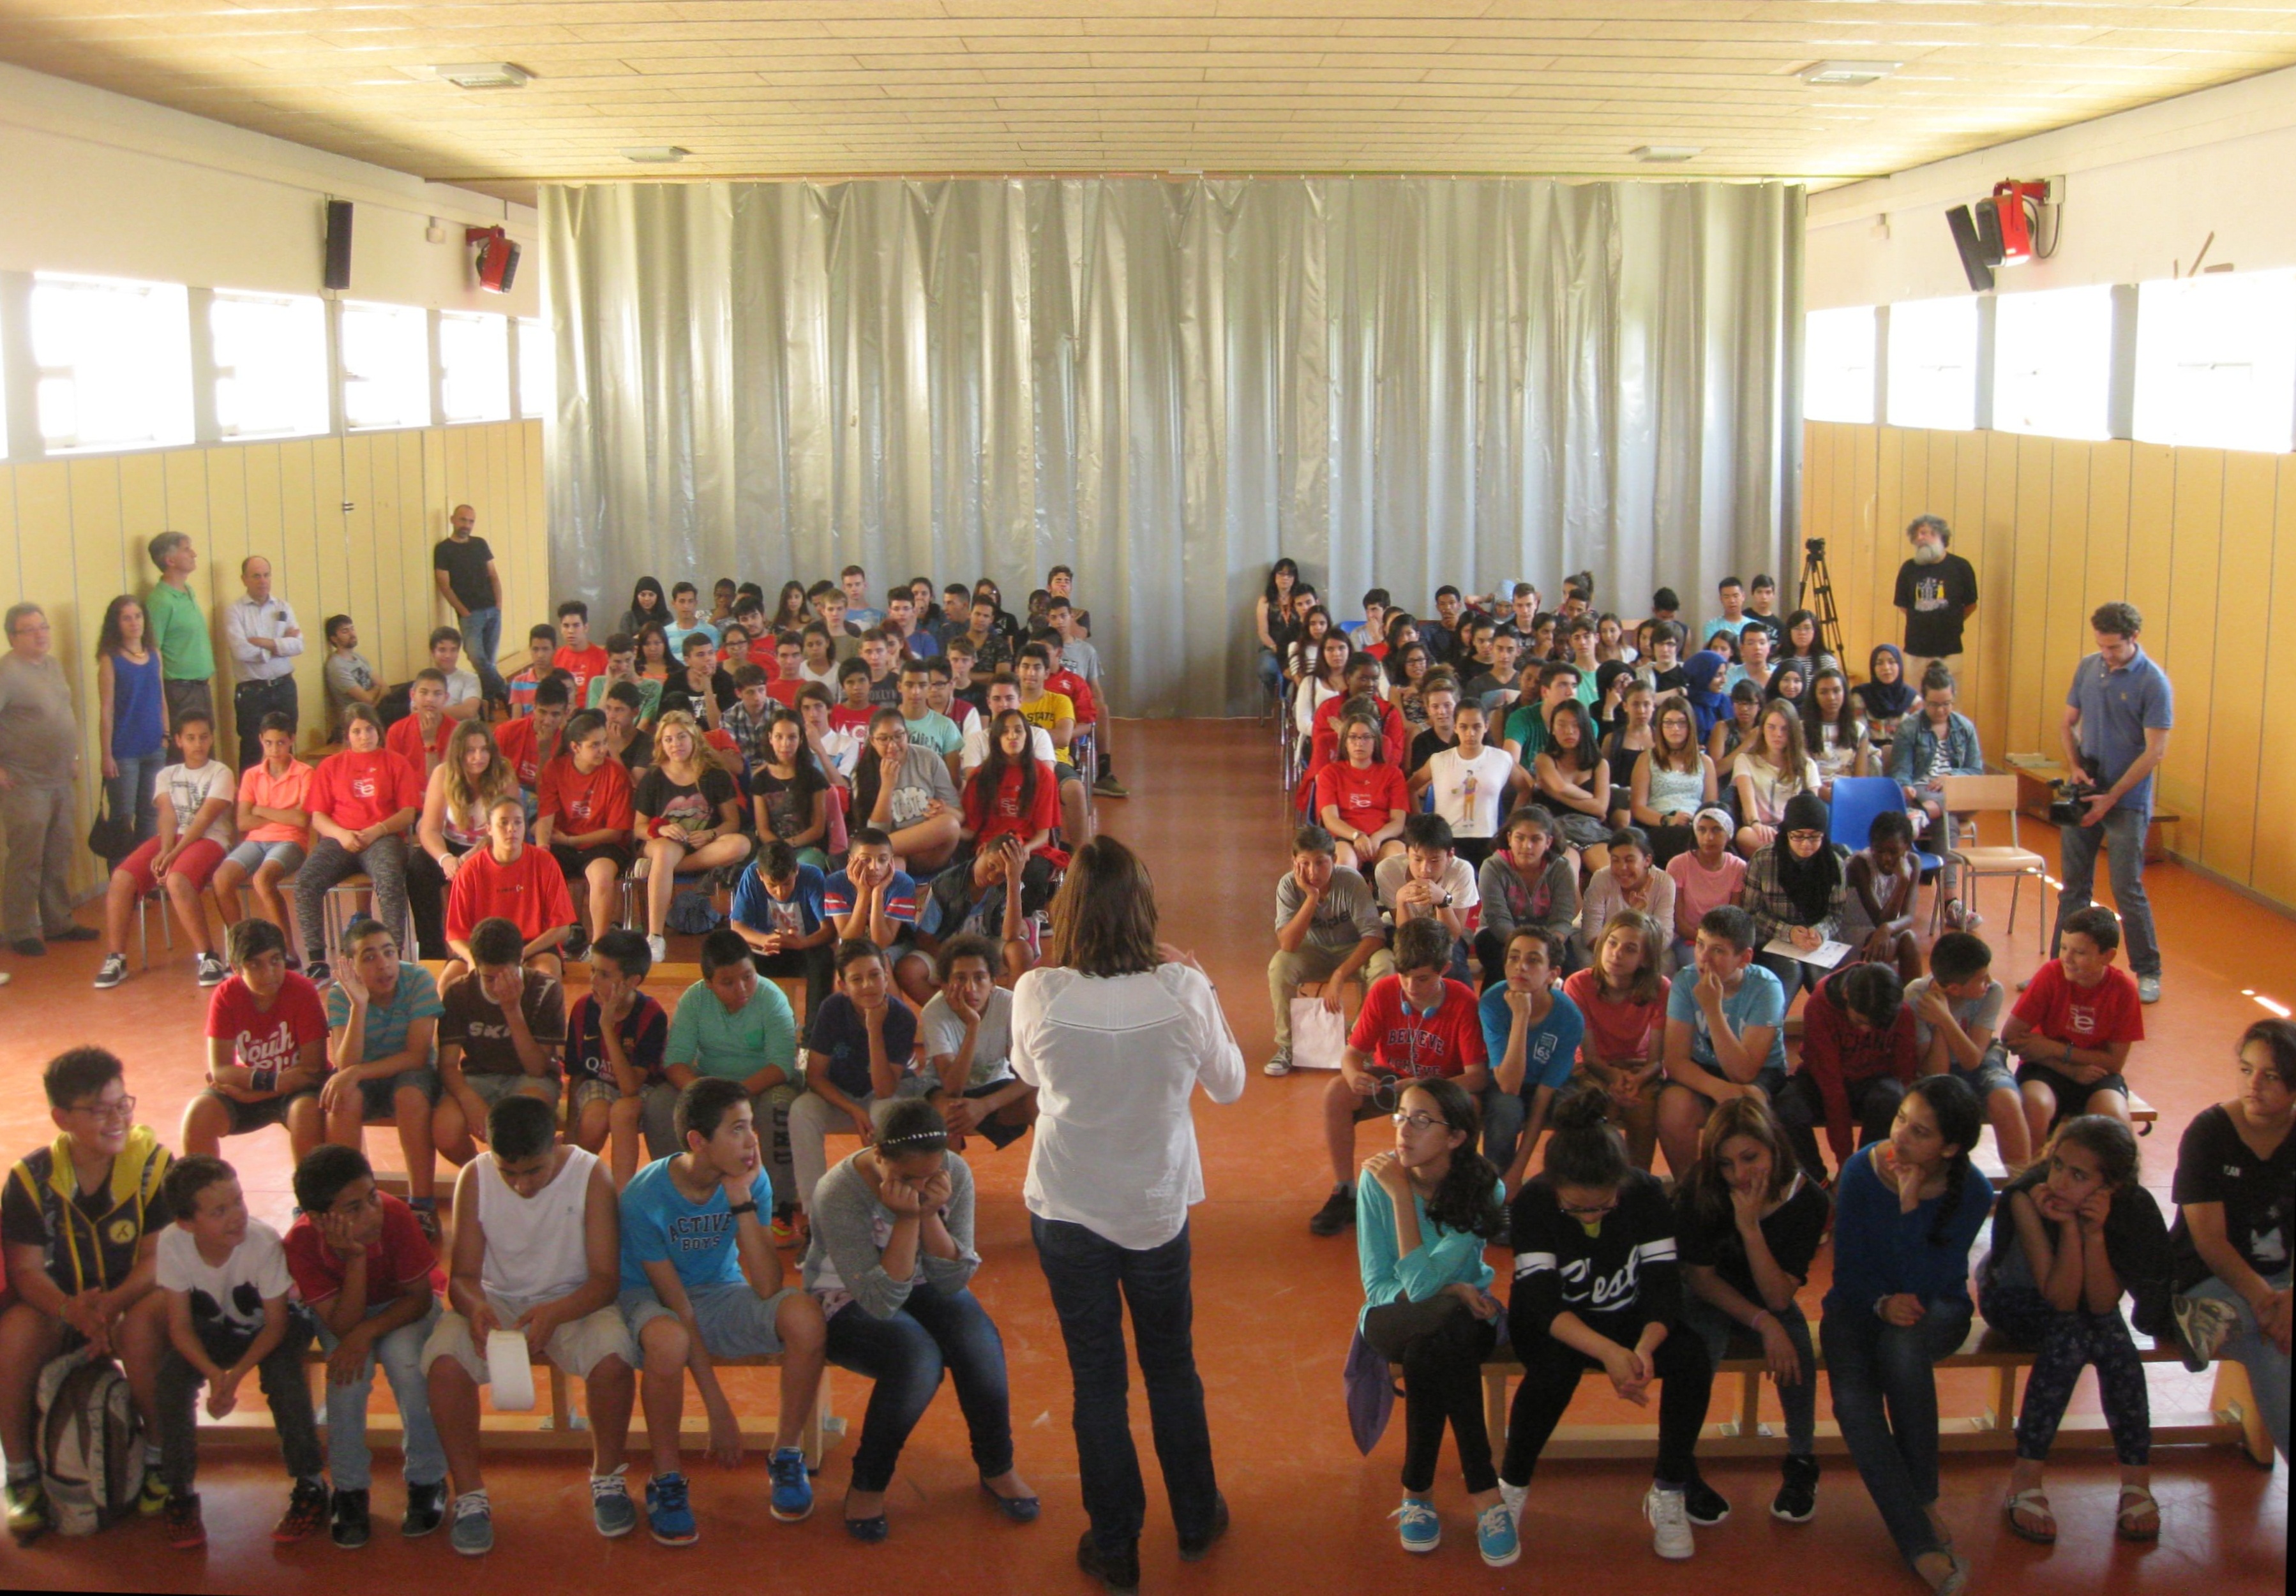 Multitudinari acte de presentació dels resultats de l'enquesta al davant dels alumnes participants (gimnàs de l'INS Santa Eulàlia, 3 de juny de 2015)